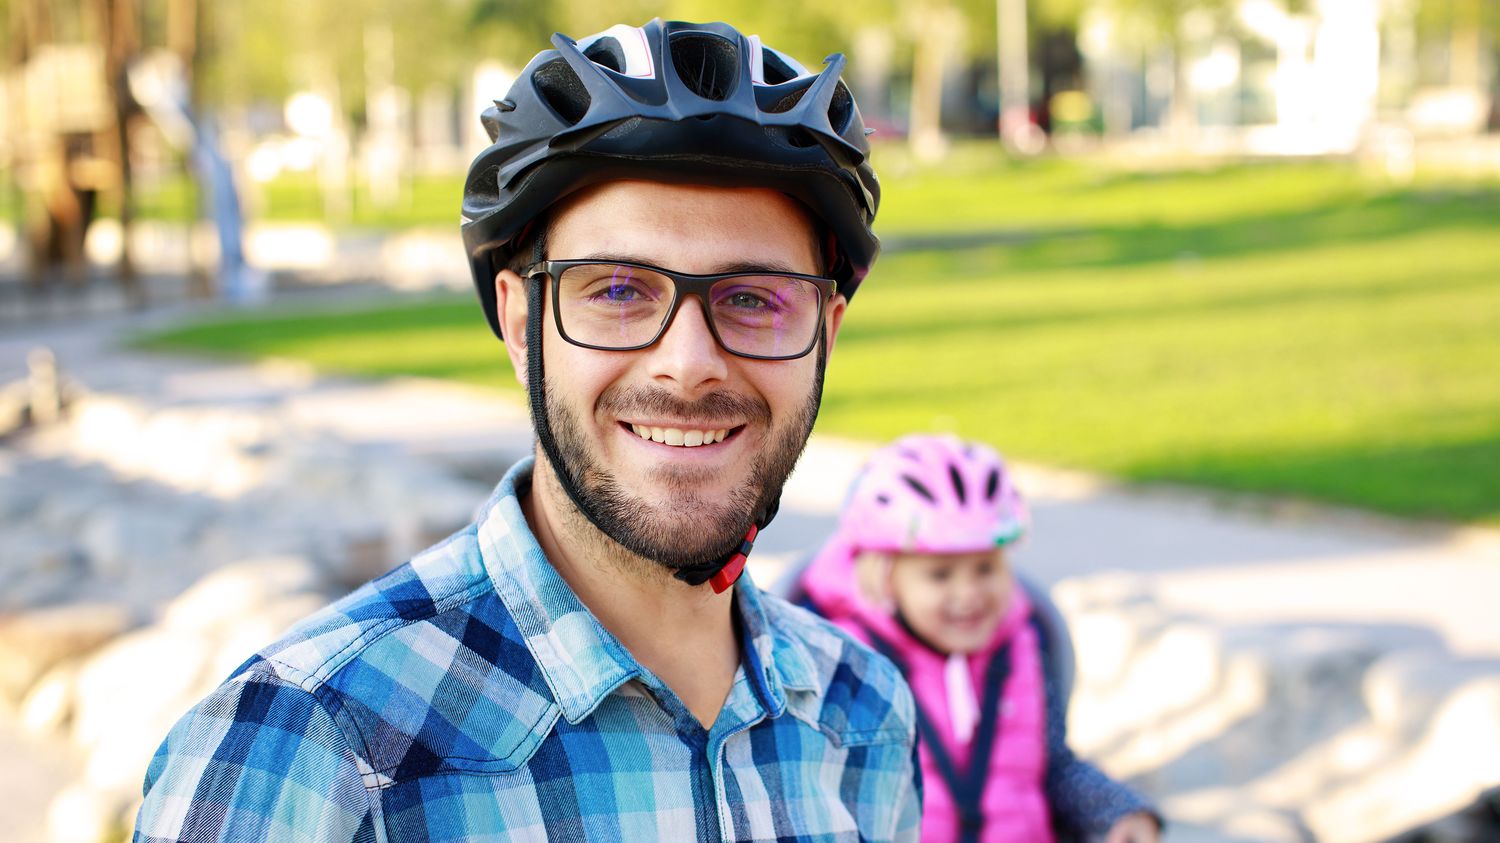 Fahrrad, fahren, sanfte Mobilität, Gesundheit, Familie, Papa, Gemeinschaft, Rad